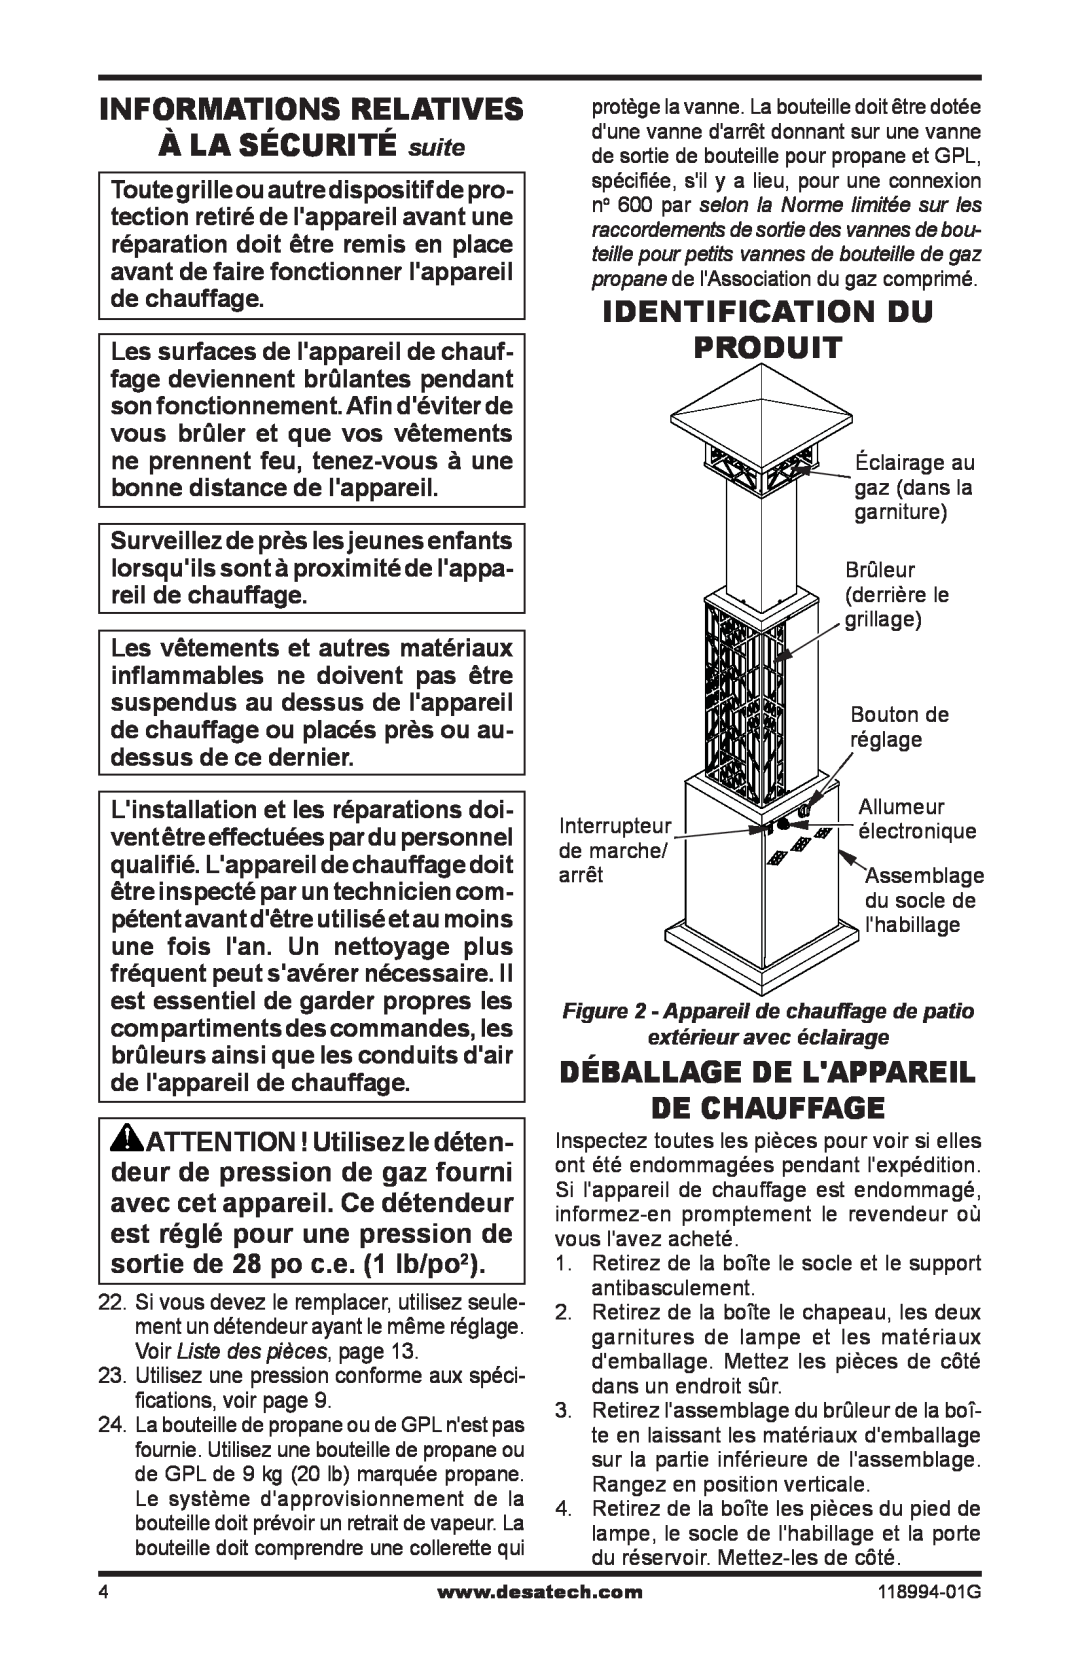 Desa Td100 À LA SÉCURITÉ suite, Identification du produit, Déballage de lappareil de chauffage, Informations Relatives 